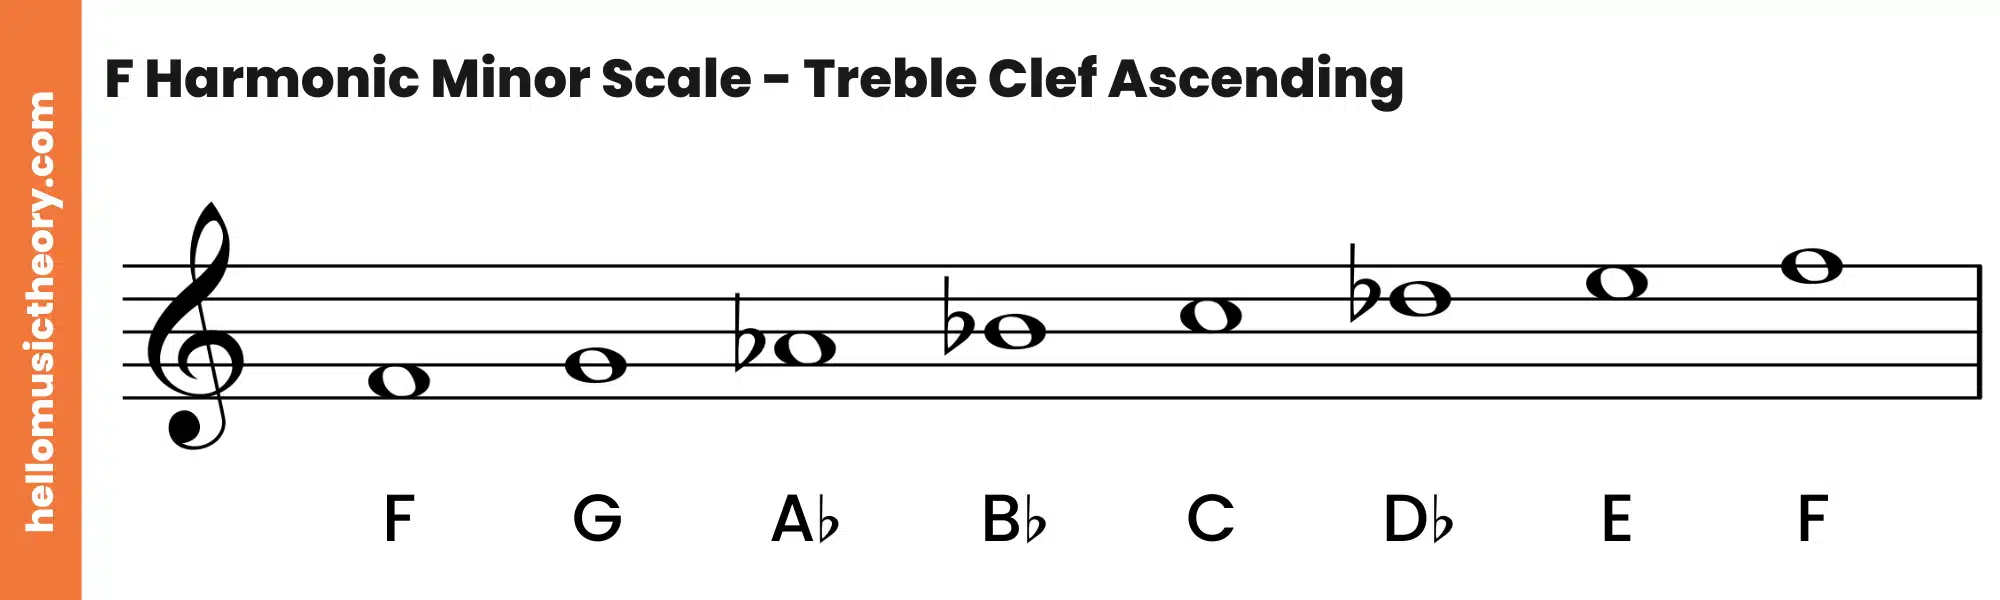 F Harmonic Minor Scale Treble Clef Ascending